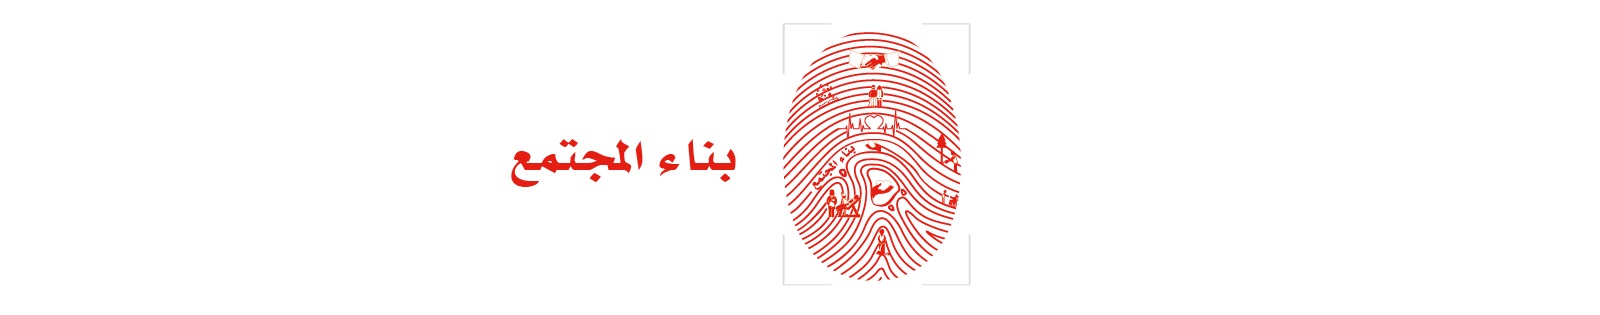 red fingerprint